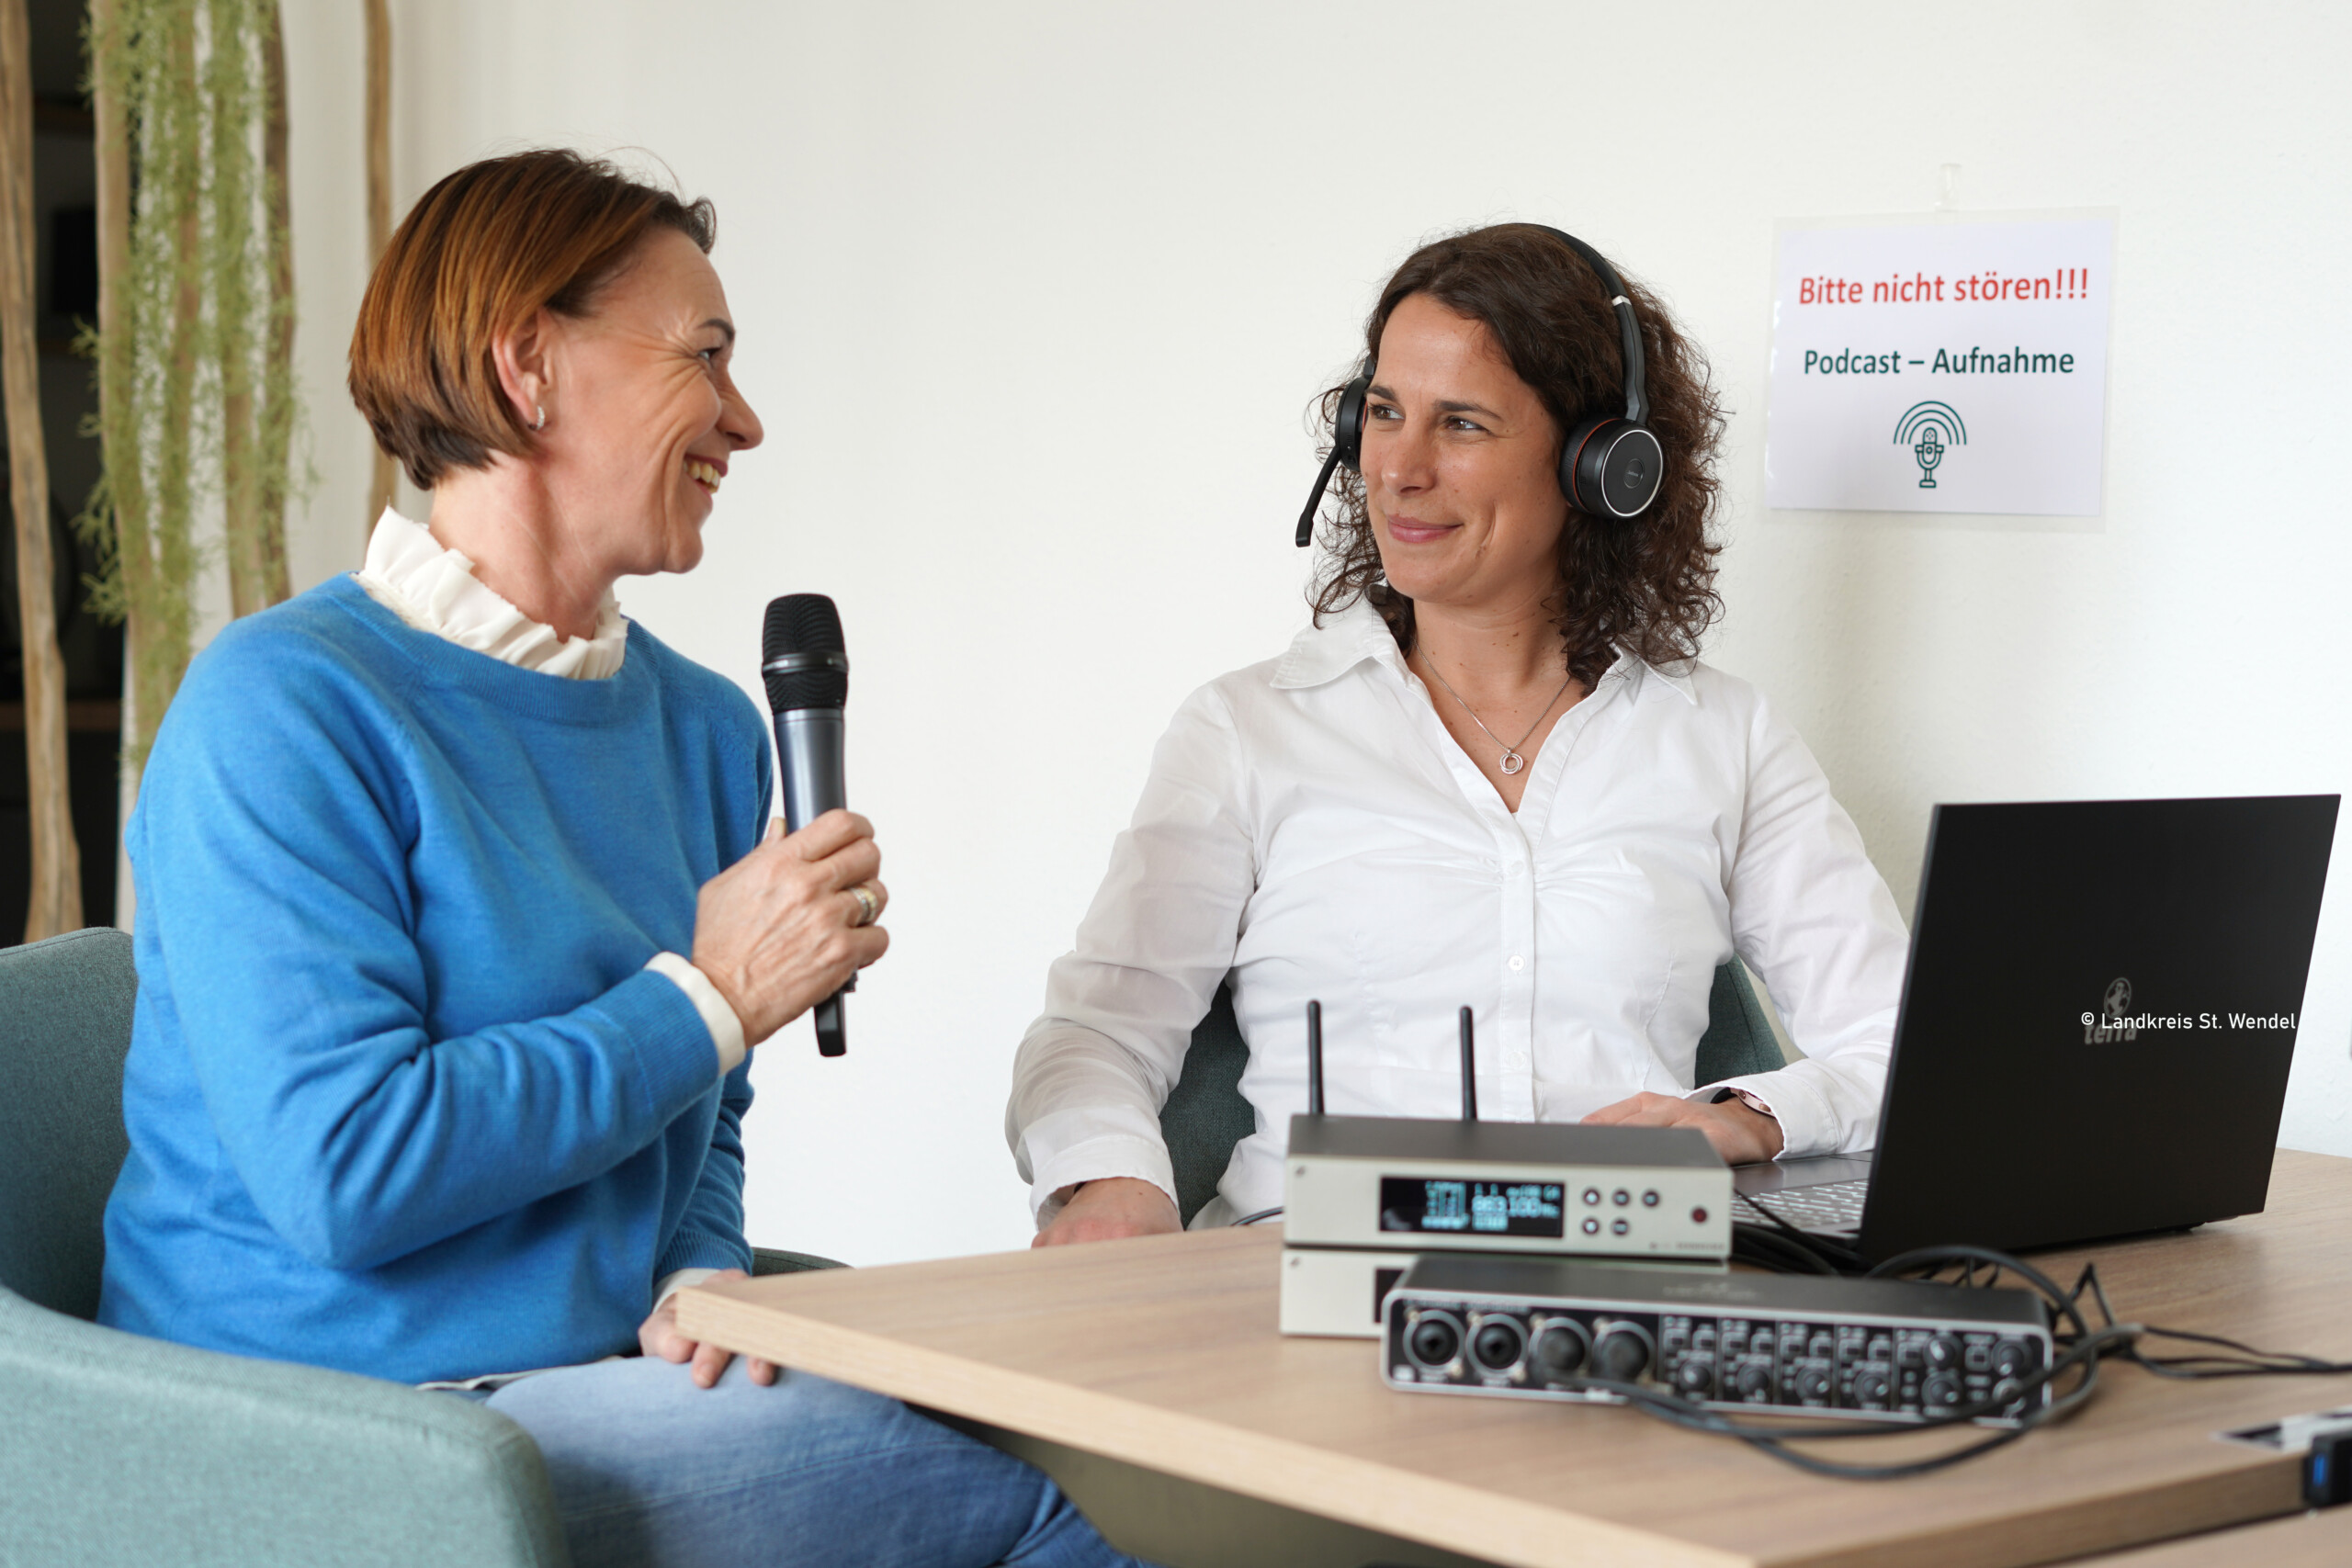 Zwei Frauen sitzen sich bei einer Podcast-Aufnahme gegenüber